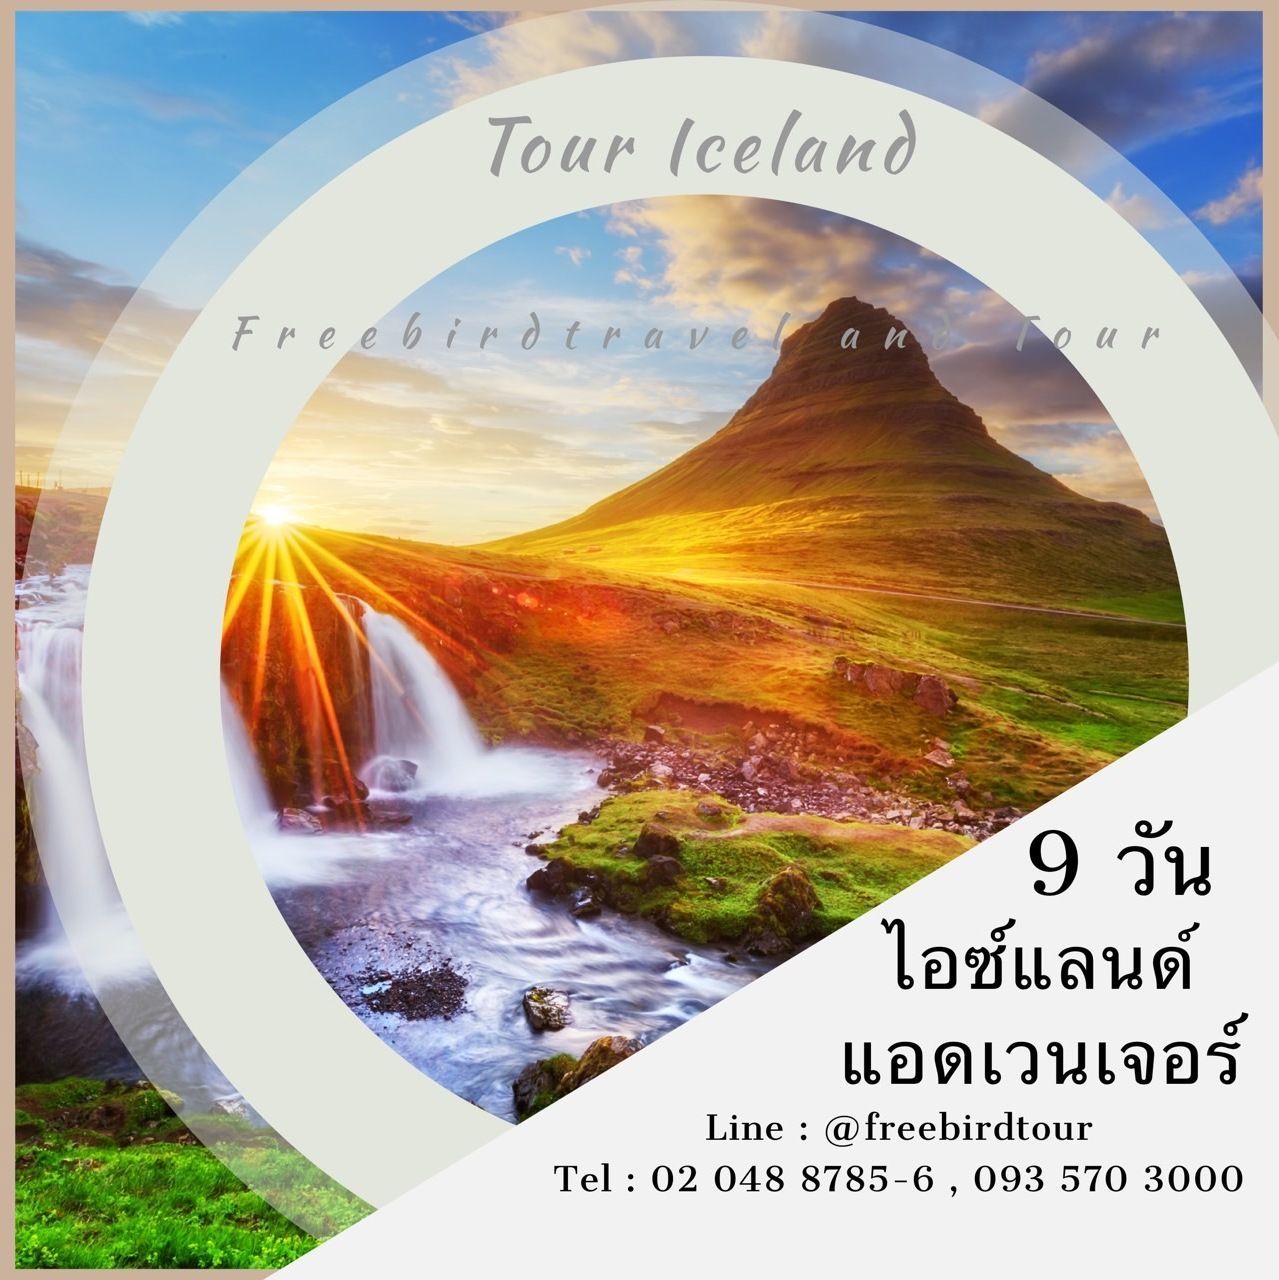 tour iceland-ทัวร์ไอซ์แลนด์